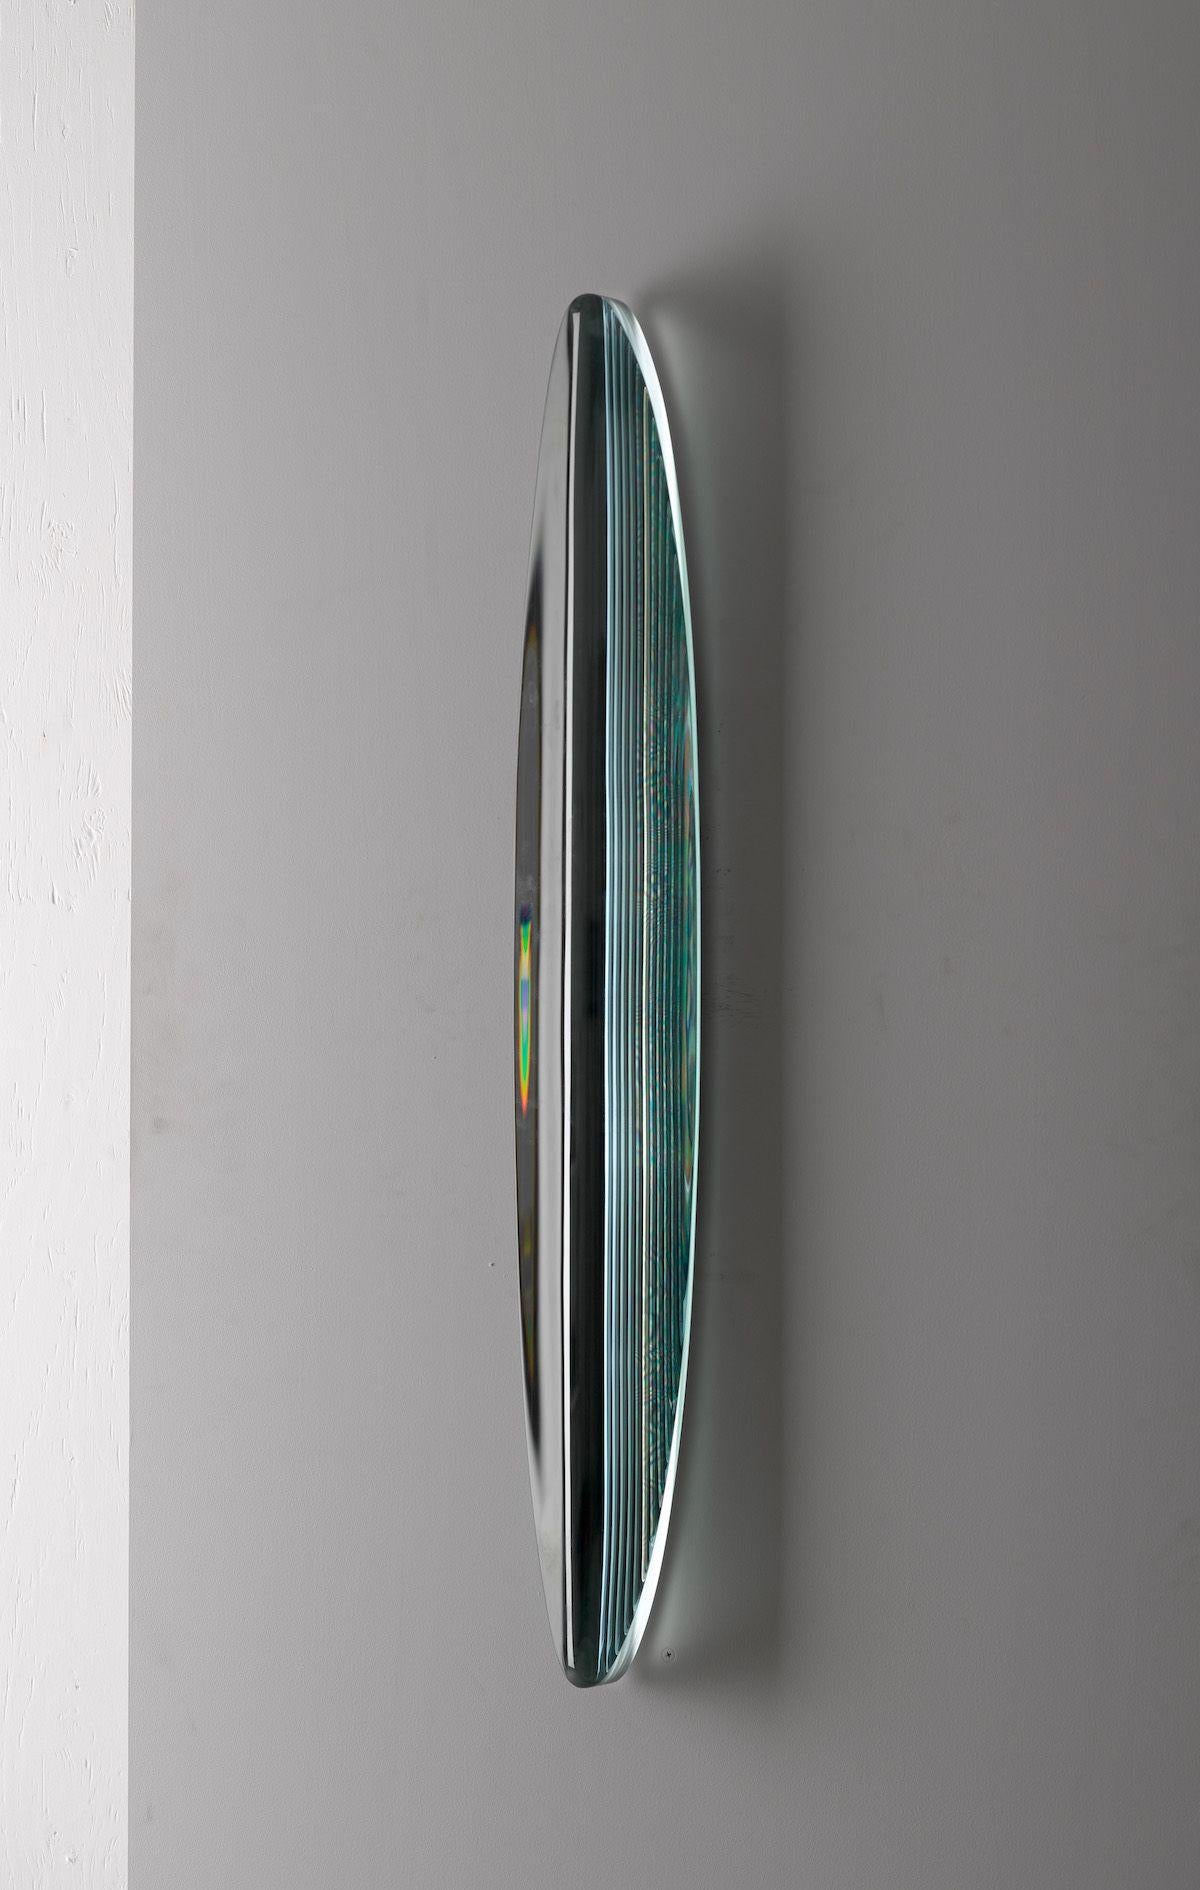 P.190501 ist eine Glasskulptur des japanischen zeitgenössischen Künstlers Toshio Iezumi mit den Maßen 100 × 15 × 7 cm (39,4 × 5,9 × 2,8 in). 
Die Skulptur ist signiert und nummeriert, gehört zu einer limitierten Auflage von 5 Exemplaren und wird mit